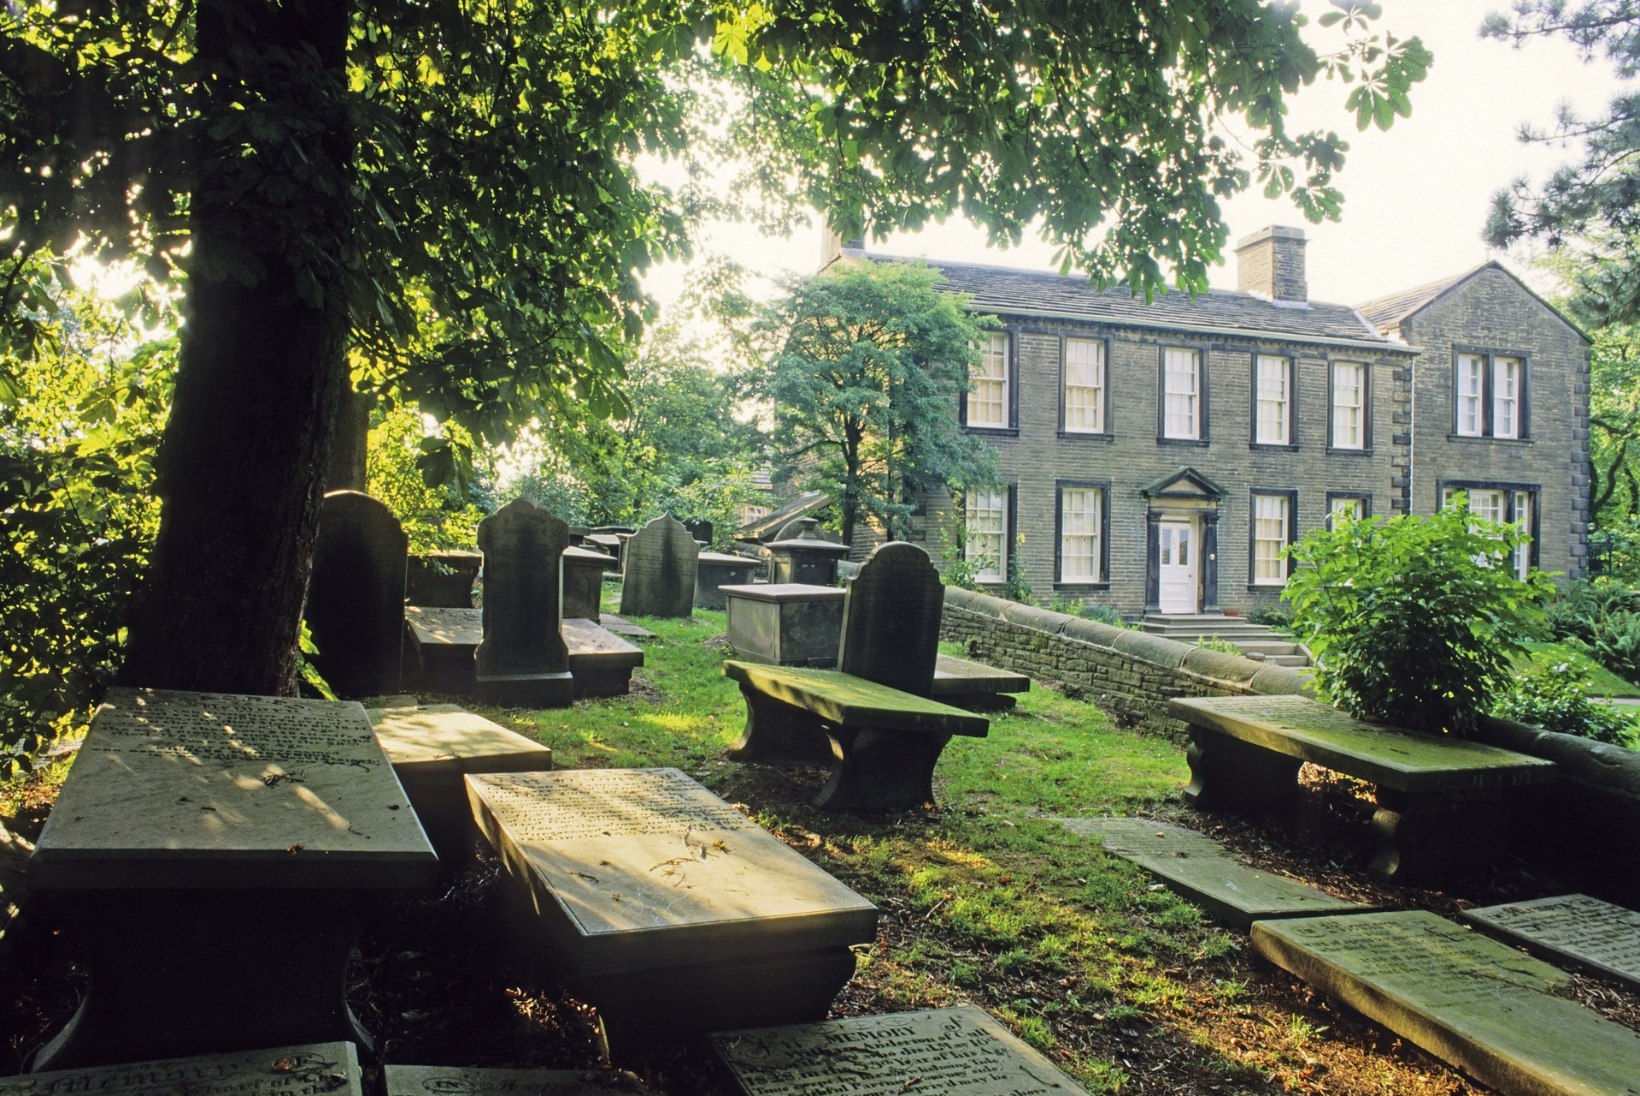 Kas õdede Brontëde traagiline surm oli saatusest määratud?